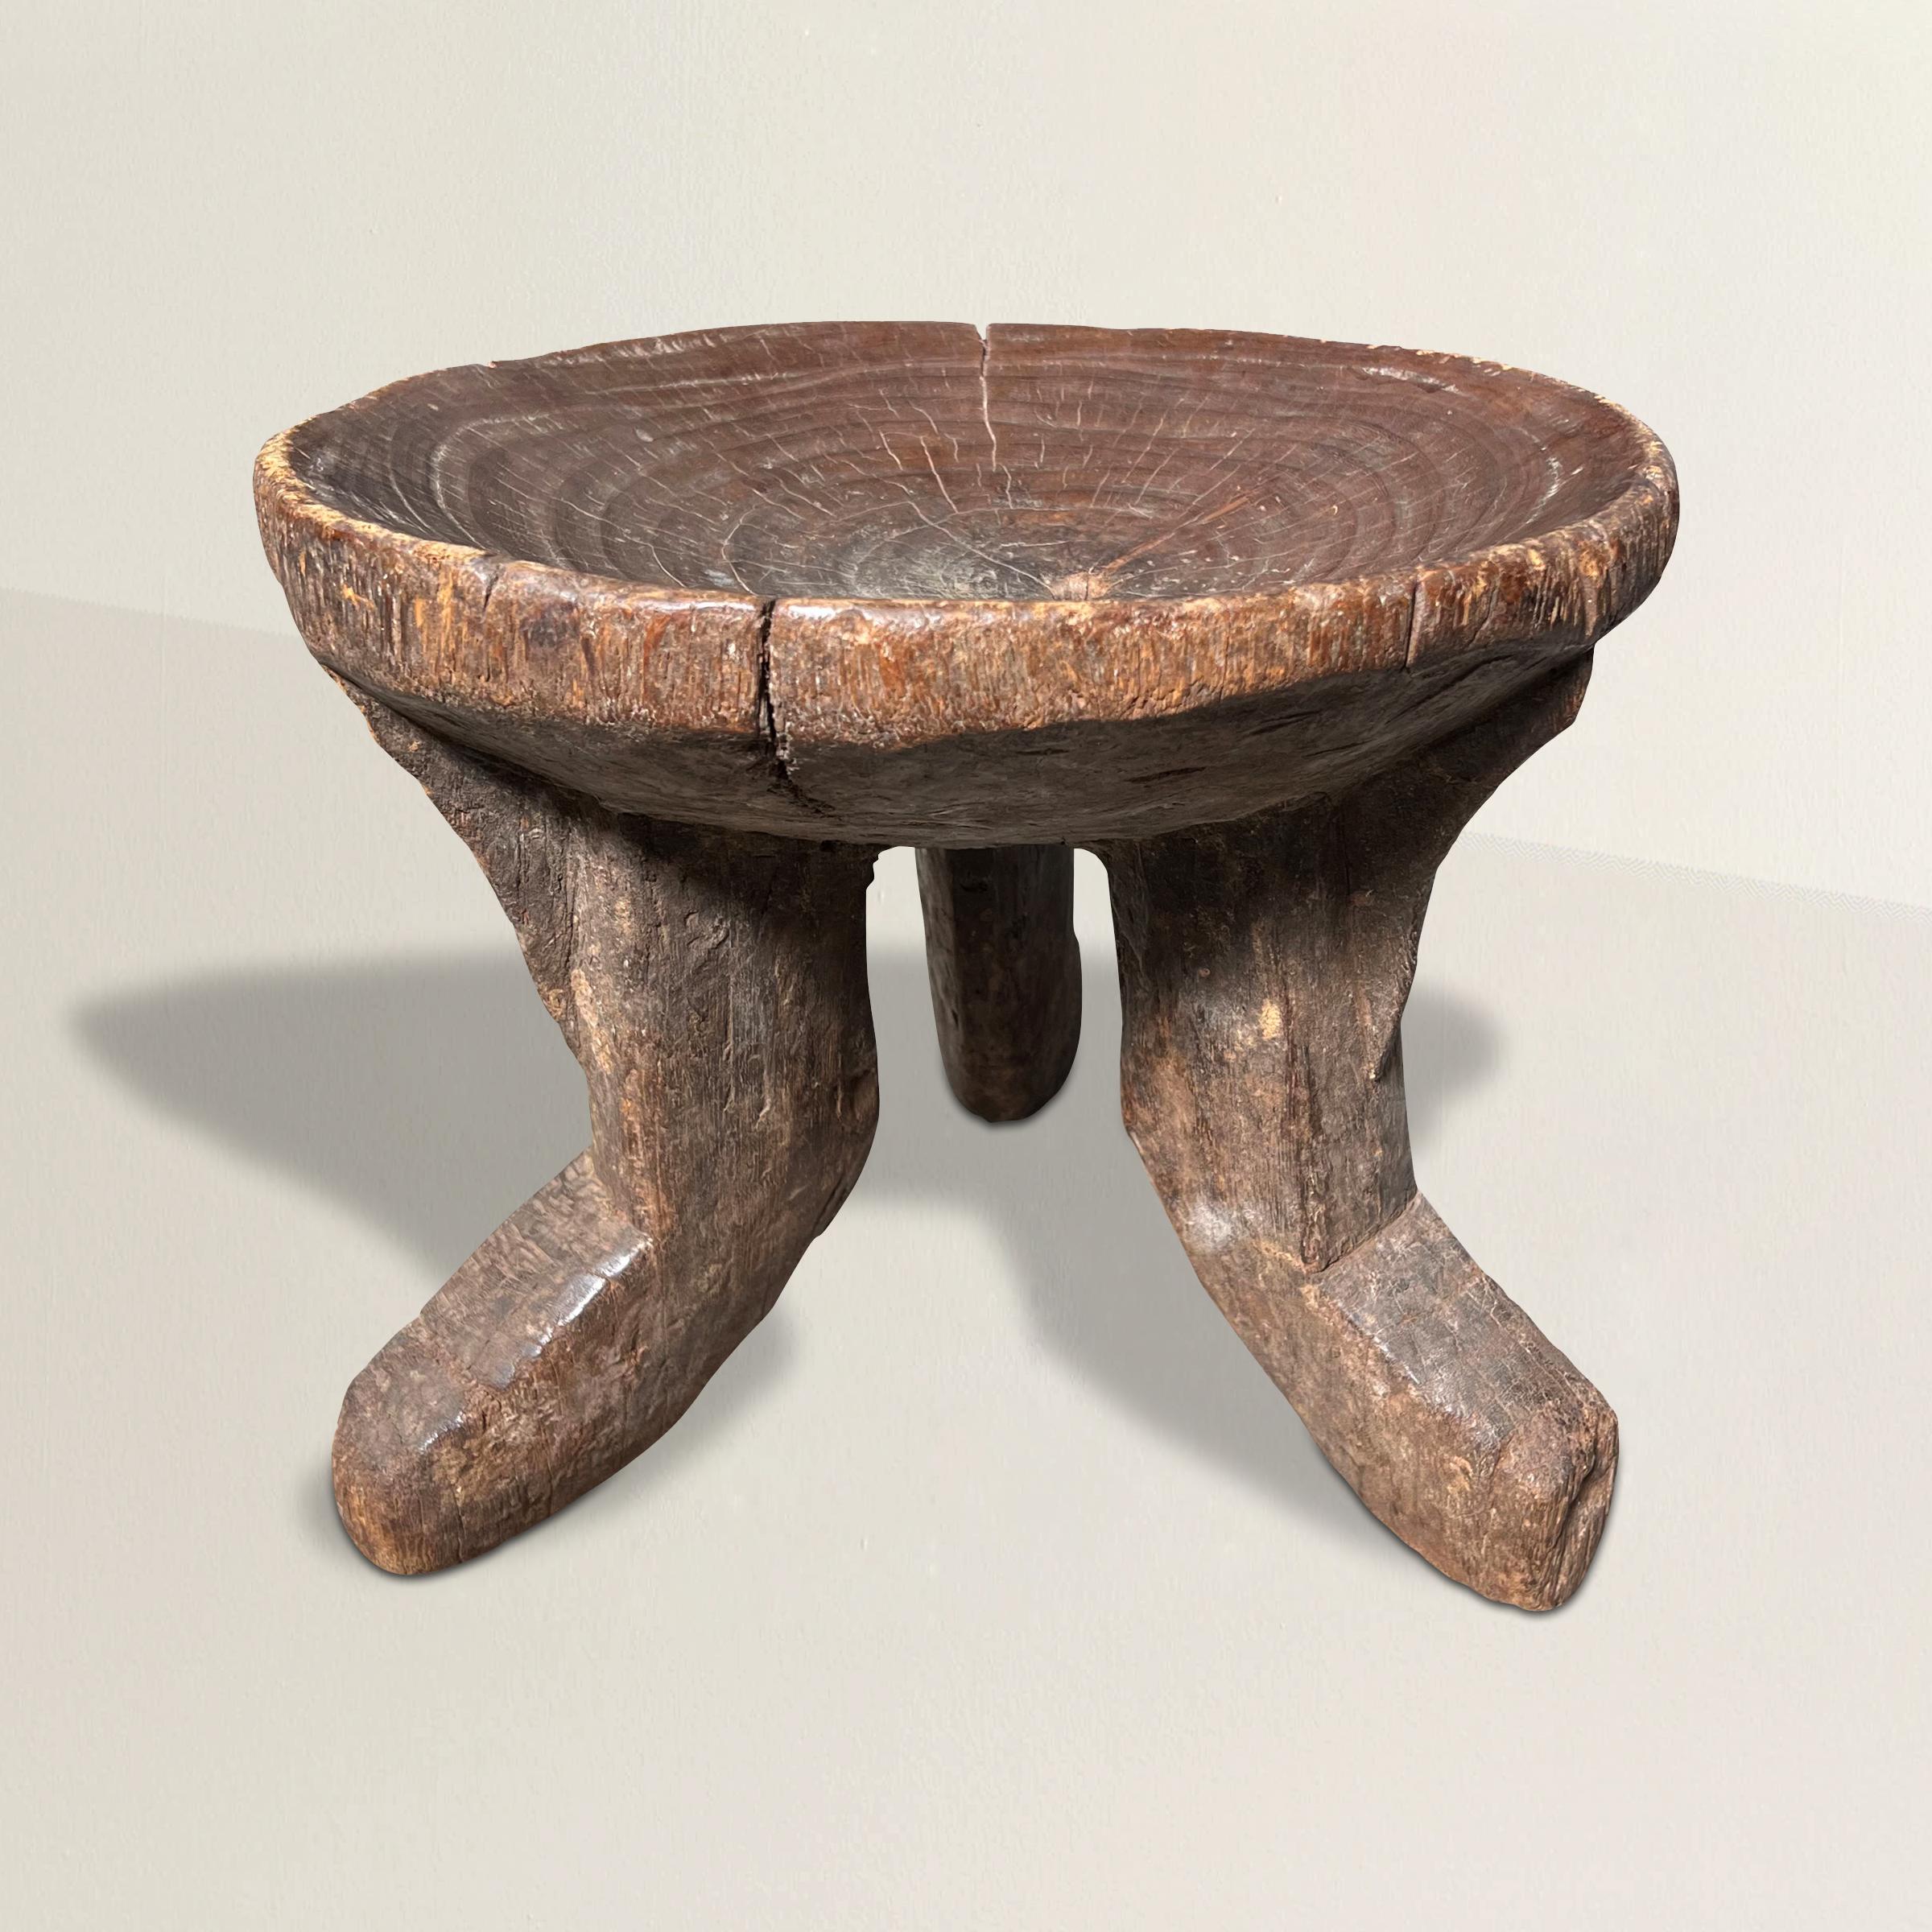 Ein wunderbar skulpturaler äthiopischer Hocker aus dem frühen 20. Jahrhundert von den Gurage-Völkern, aus einem Stück Holz geschnitzt, mit einer wunderbaren Textur und drei geschwungenen Beinen, die eine konvexe schalenförmige Sitzfläche mit einem